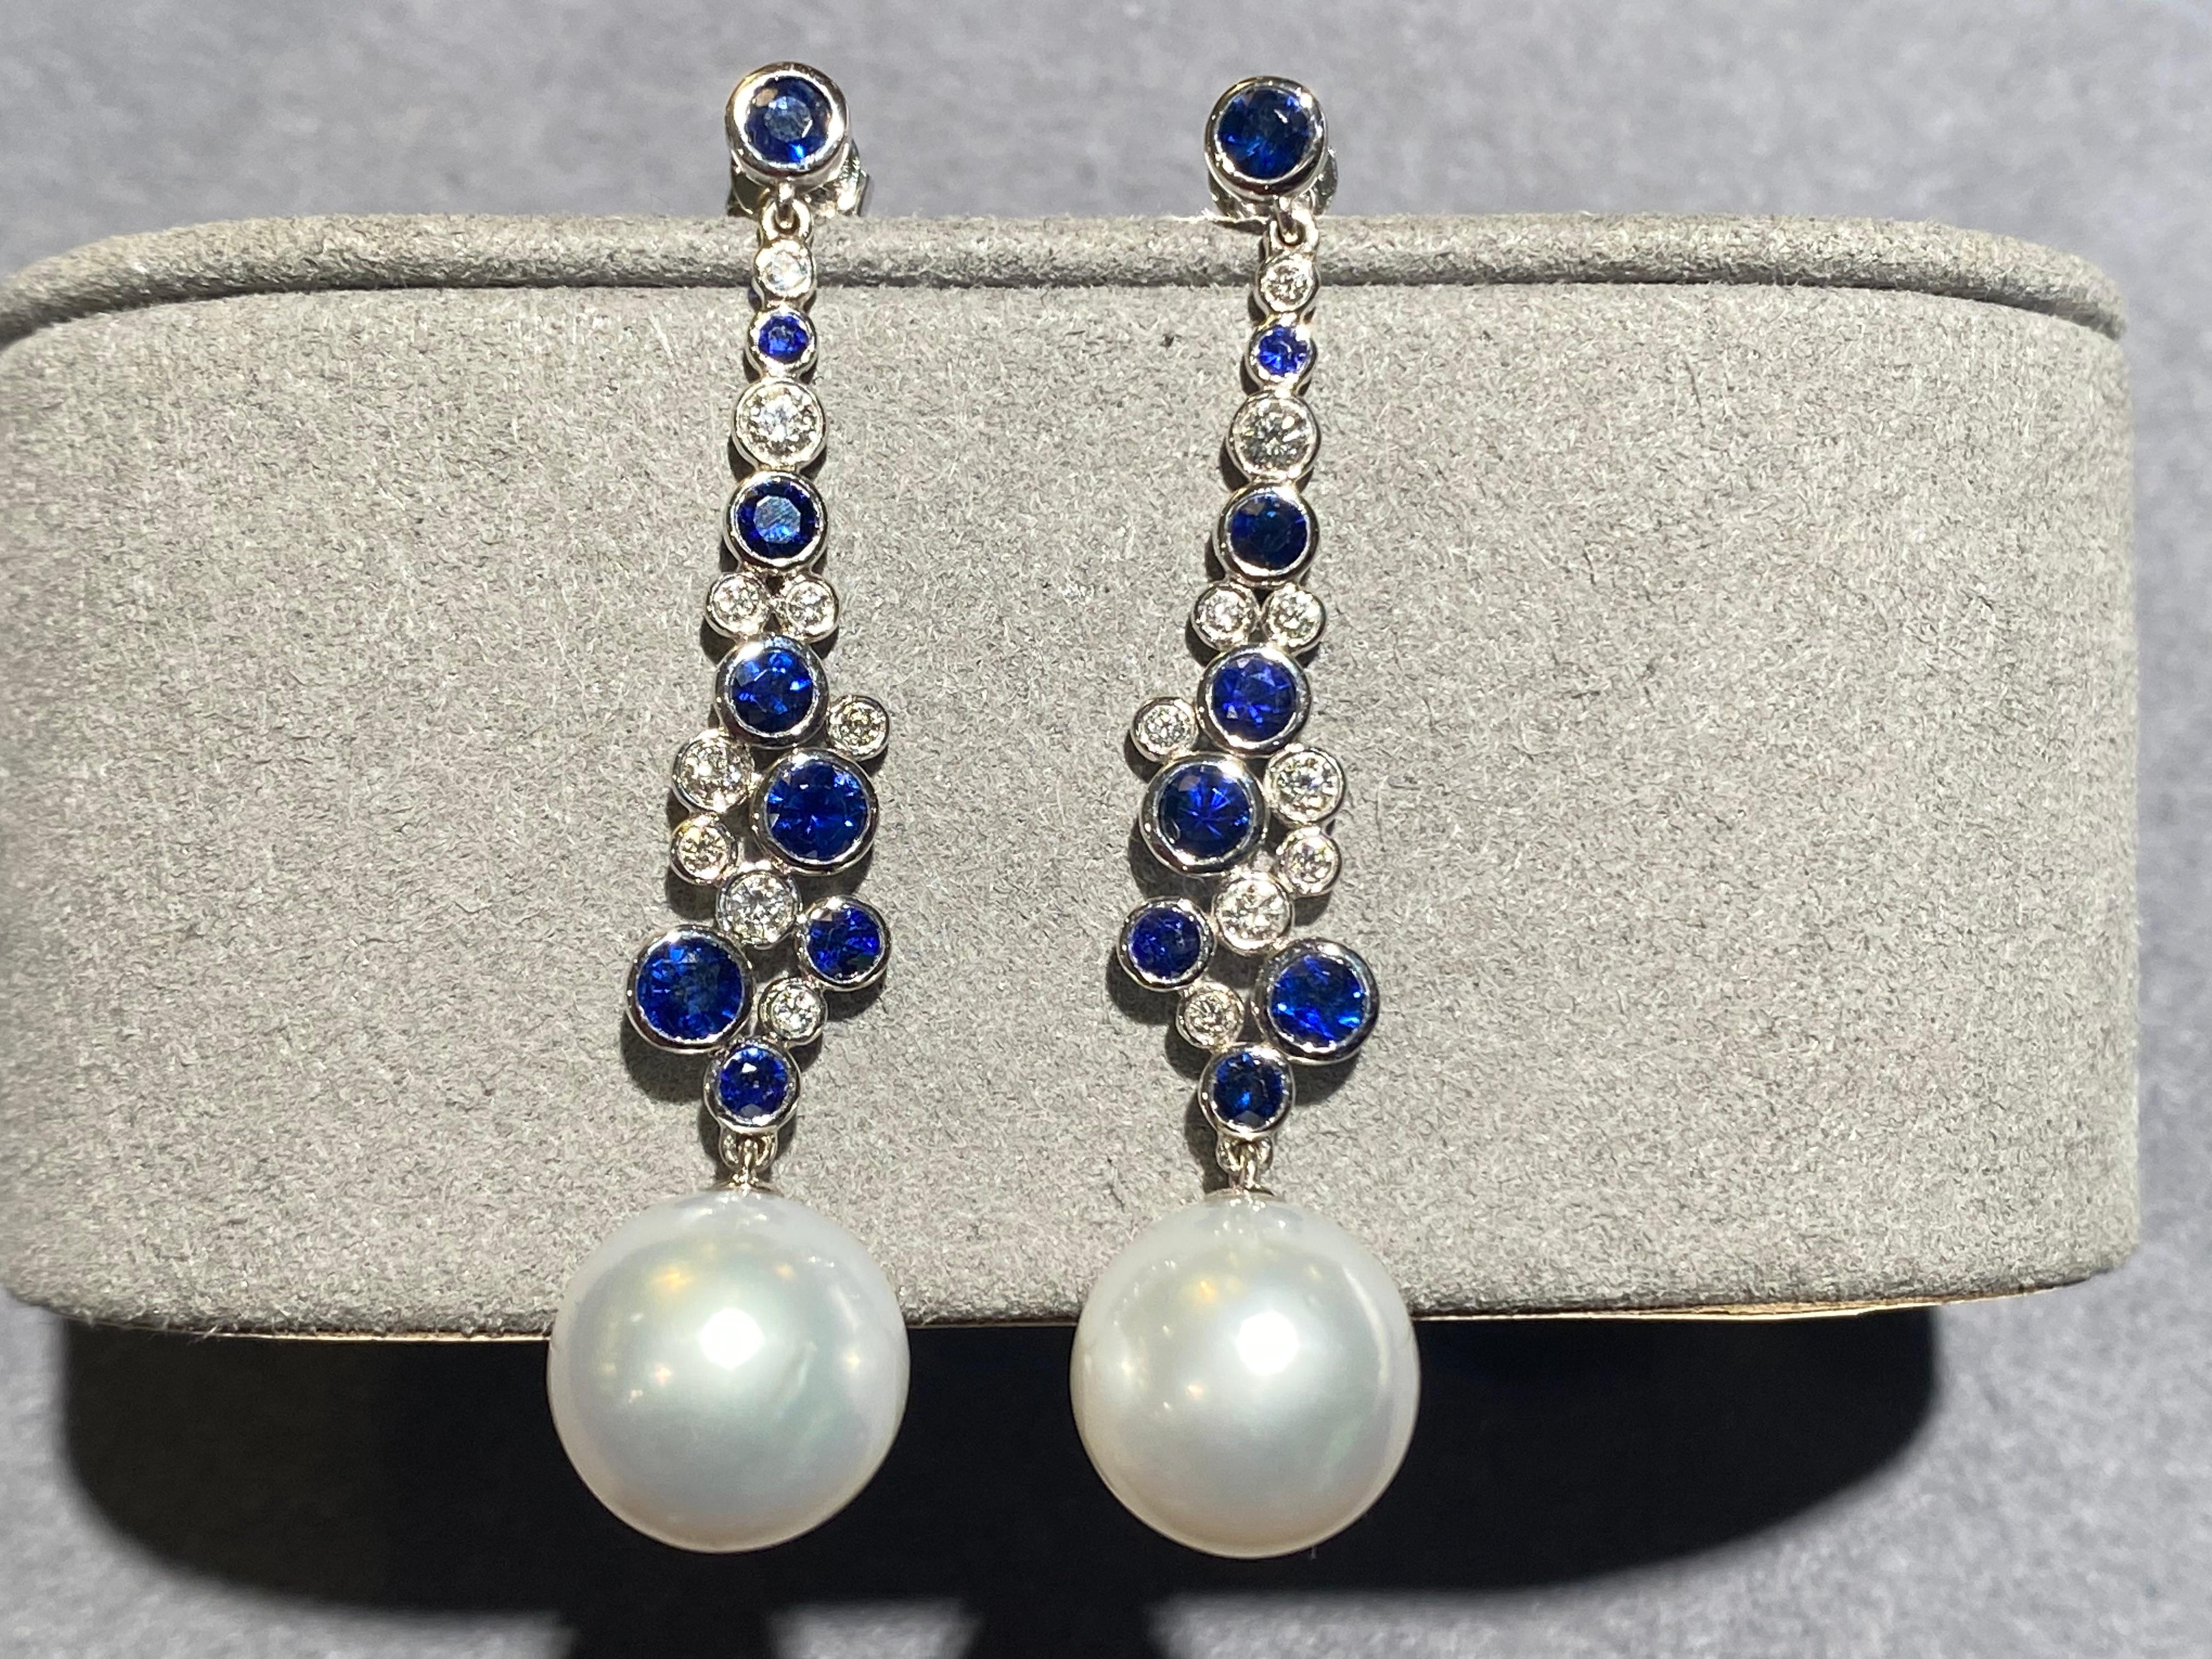 Paire de boucles d'oreilles en saphir bleu et diamants en or blanc 18 carats. Les boucles d'oreilles sont composées d'un clou en saphir bleu qui est ensuite relié à la perle blanche des mers du Sud australiennes par un motif en forme de 